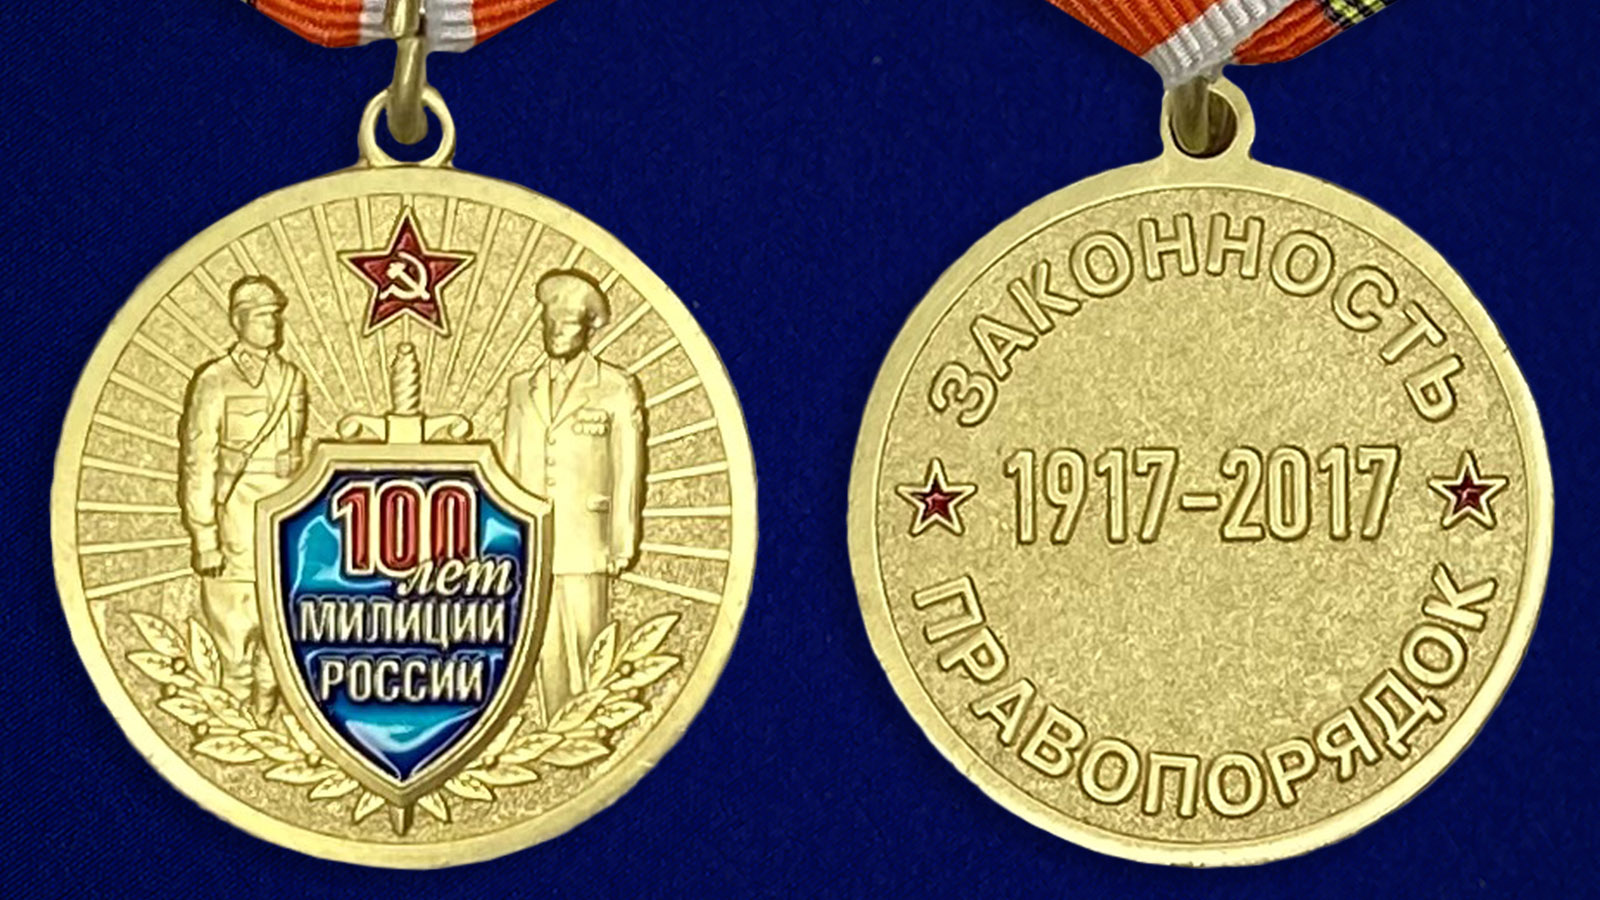 Медаль "100 лет милиции России" из латуни